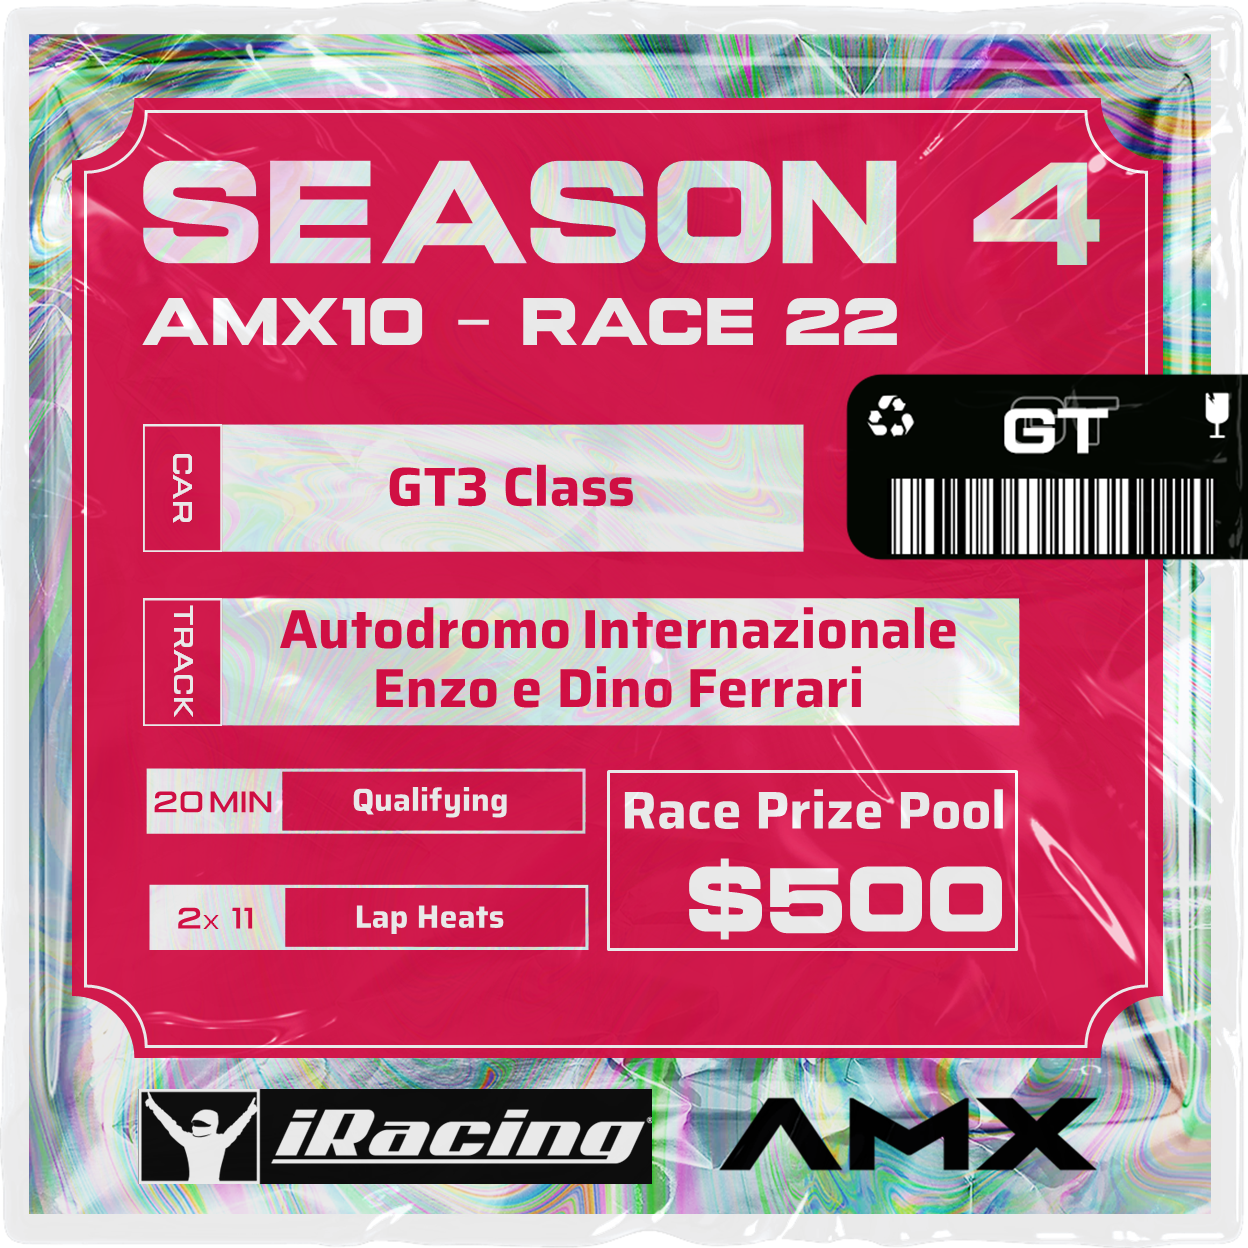 AMX10 - RACE 22 [3/24 - 7:20 PM GMT]